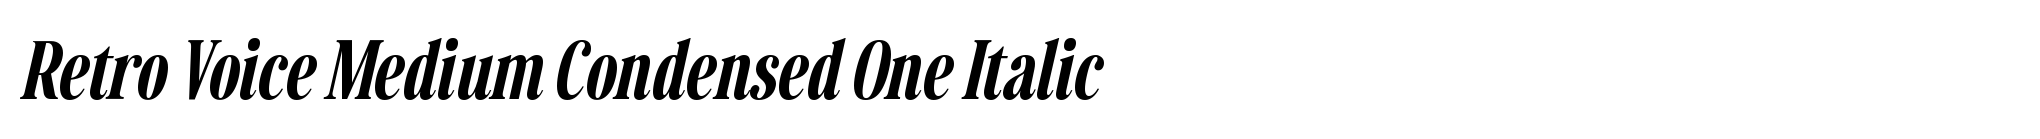 Retro Voice Medium Condensed One Italic image